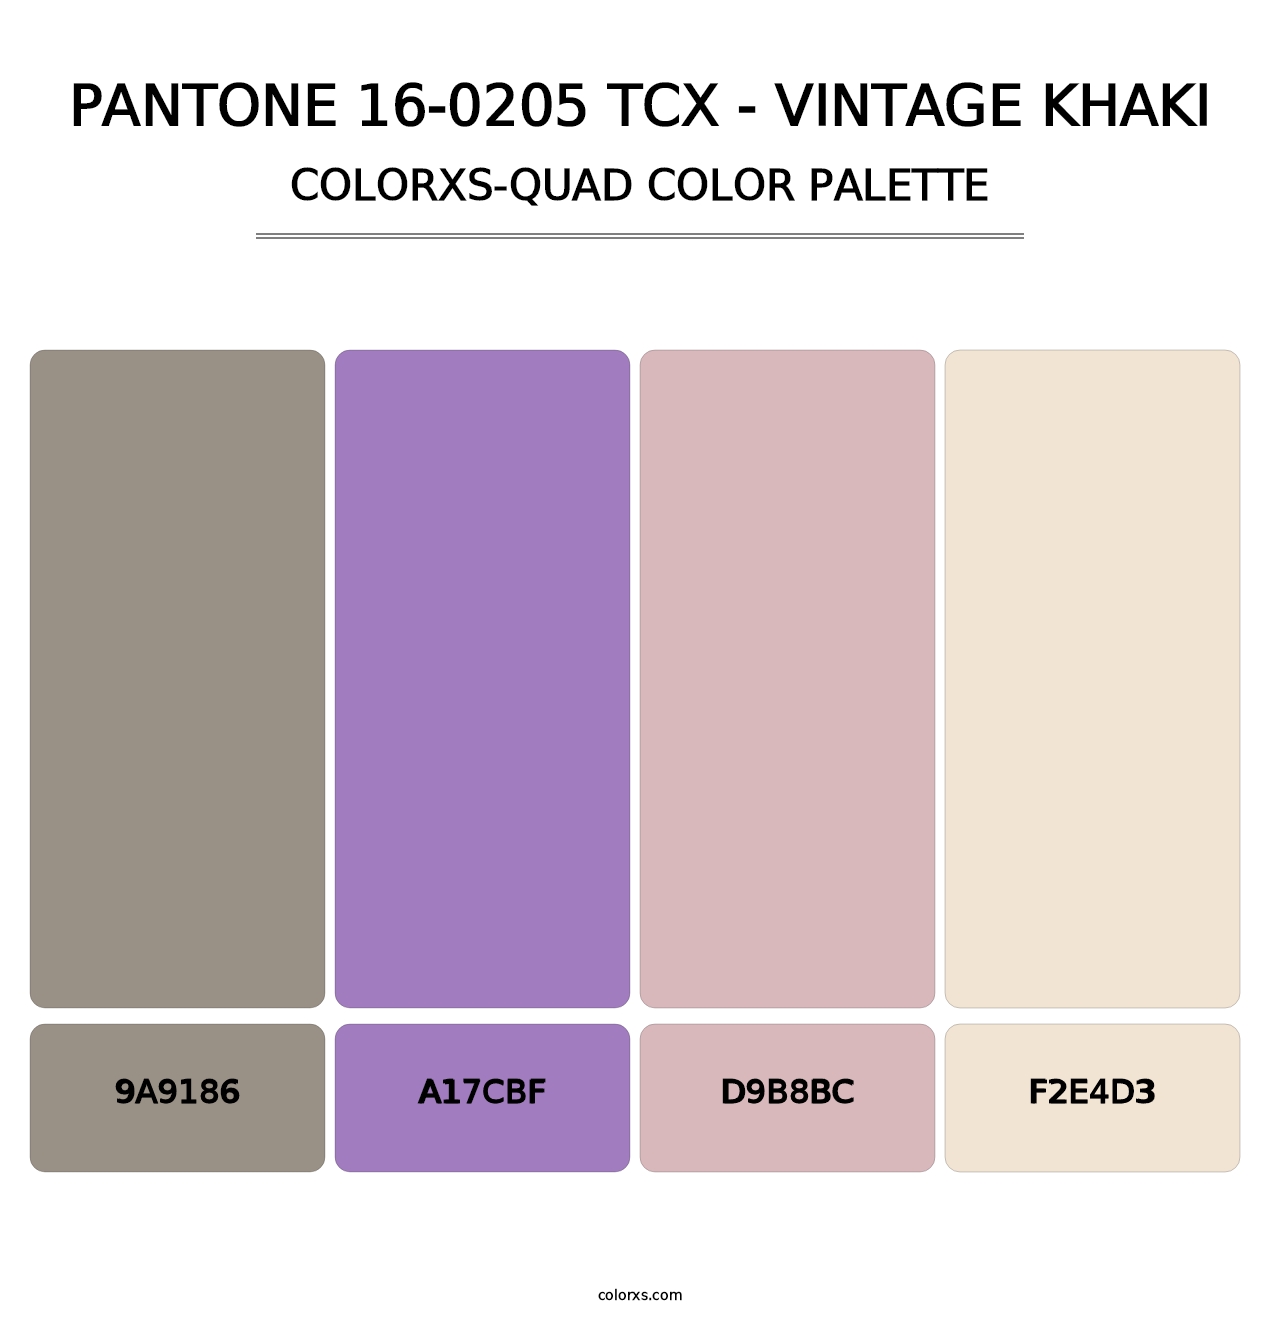 PANTONE 16-0205 TCX - Vintage Khaki - Colorxs Quad Palette